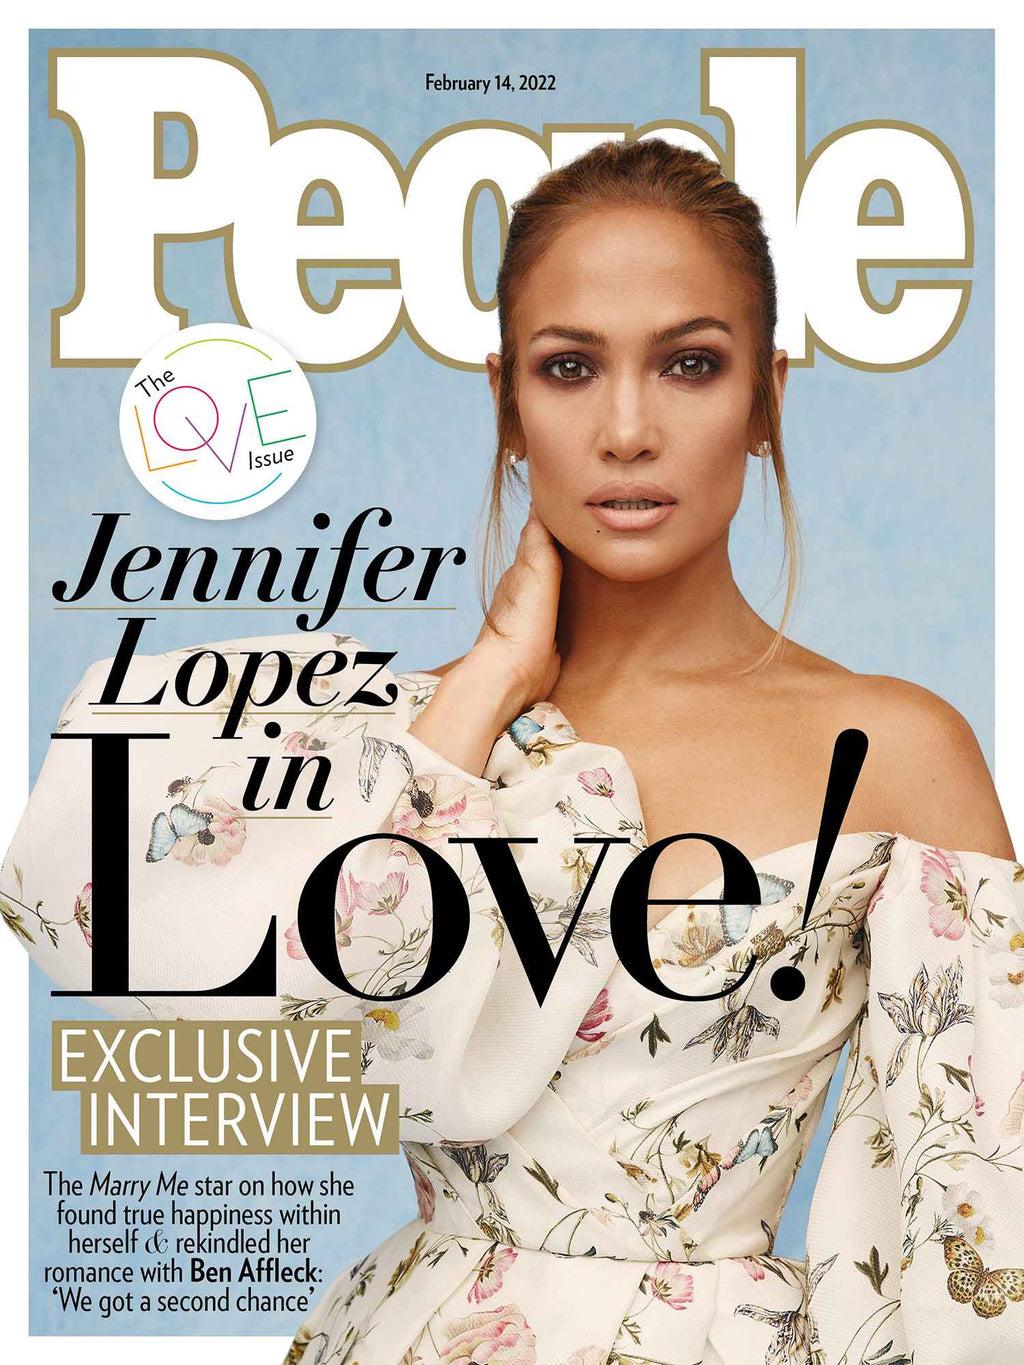 Por su parte, la revista People, edición en inglés, continuará imprimiéndose. La cantante Jennifer López adorna la portada del mes de febrero.